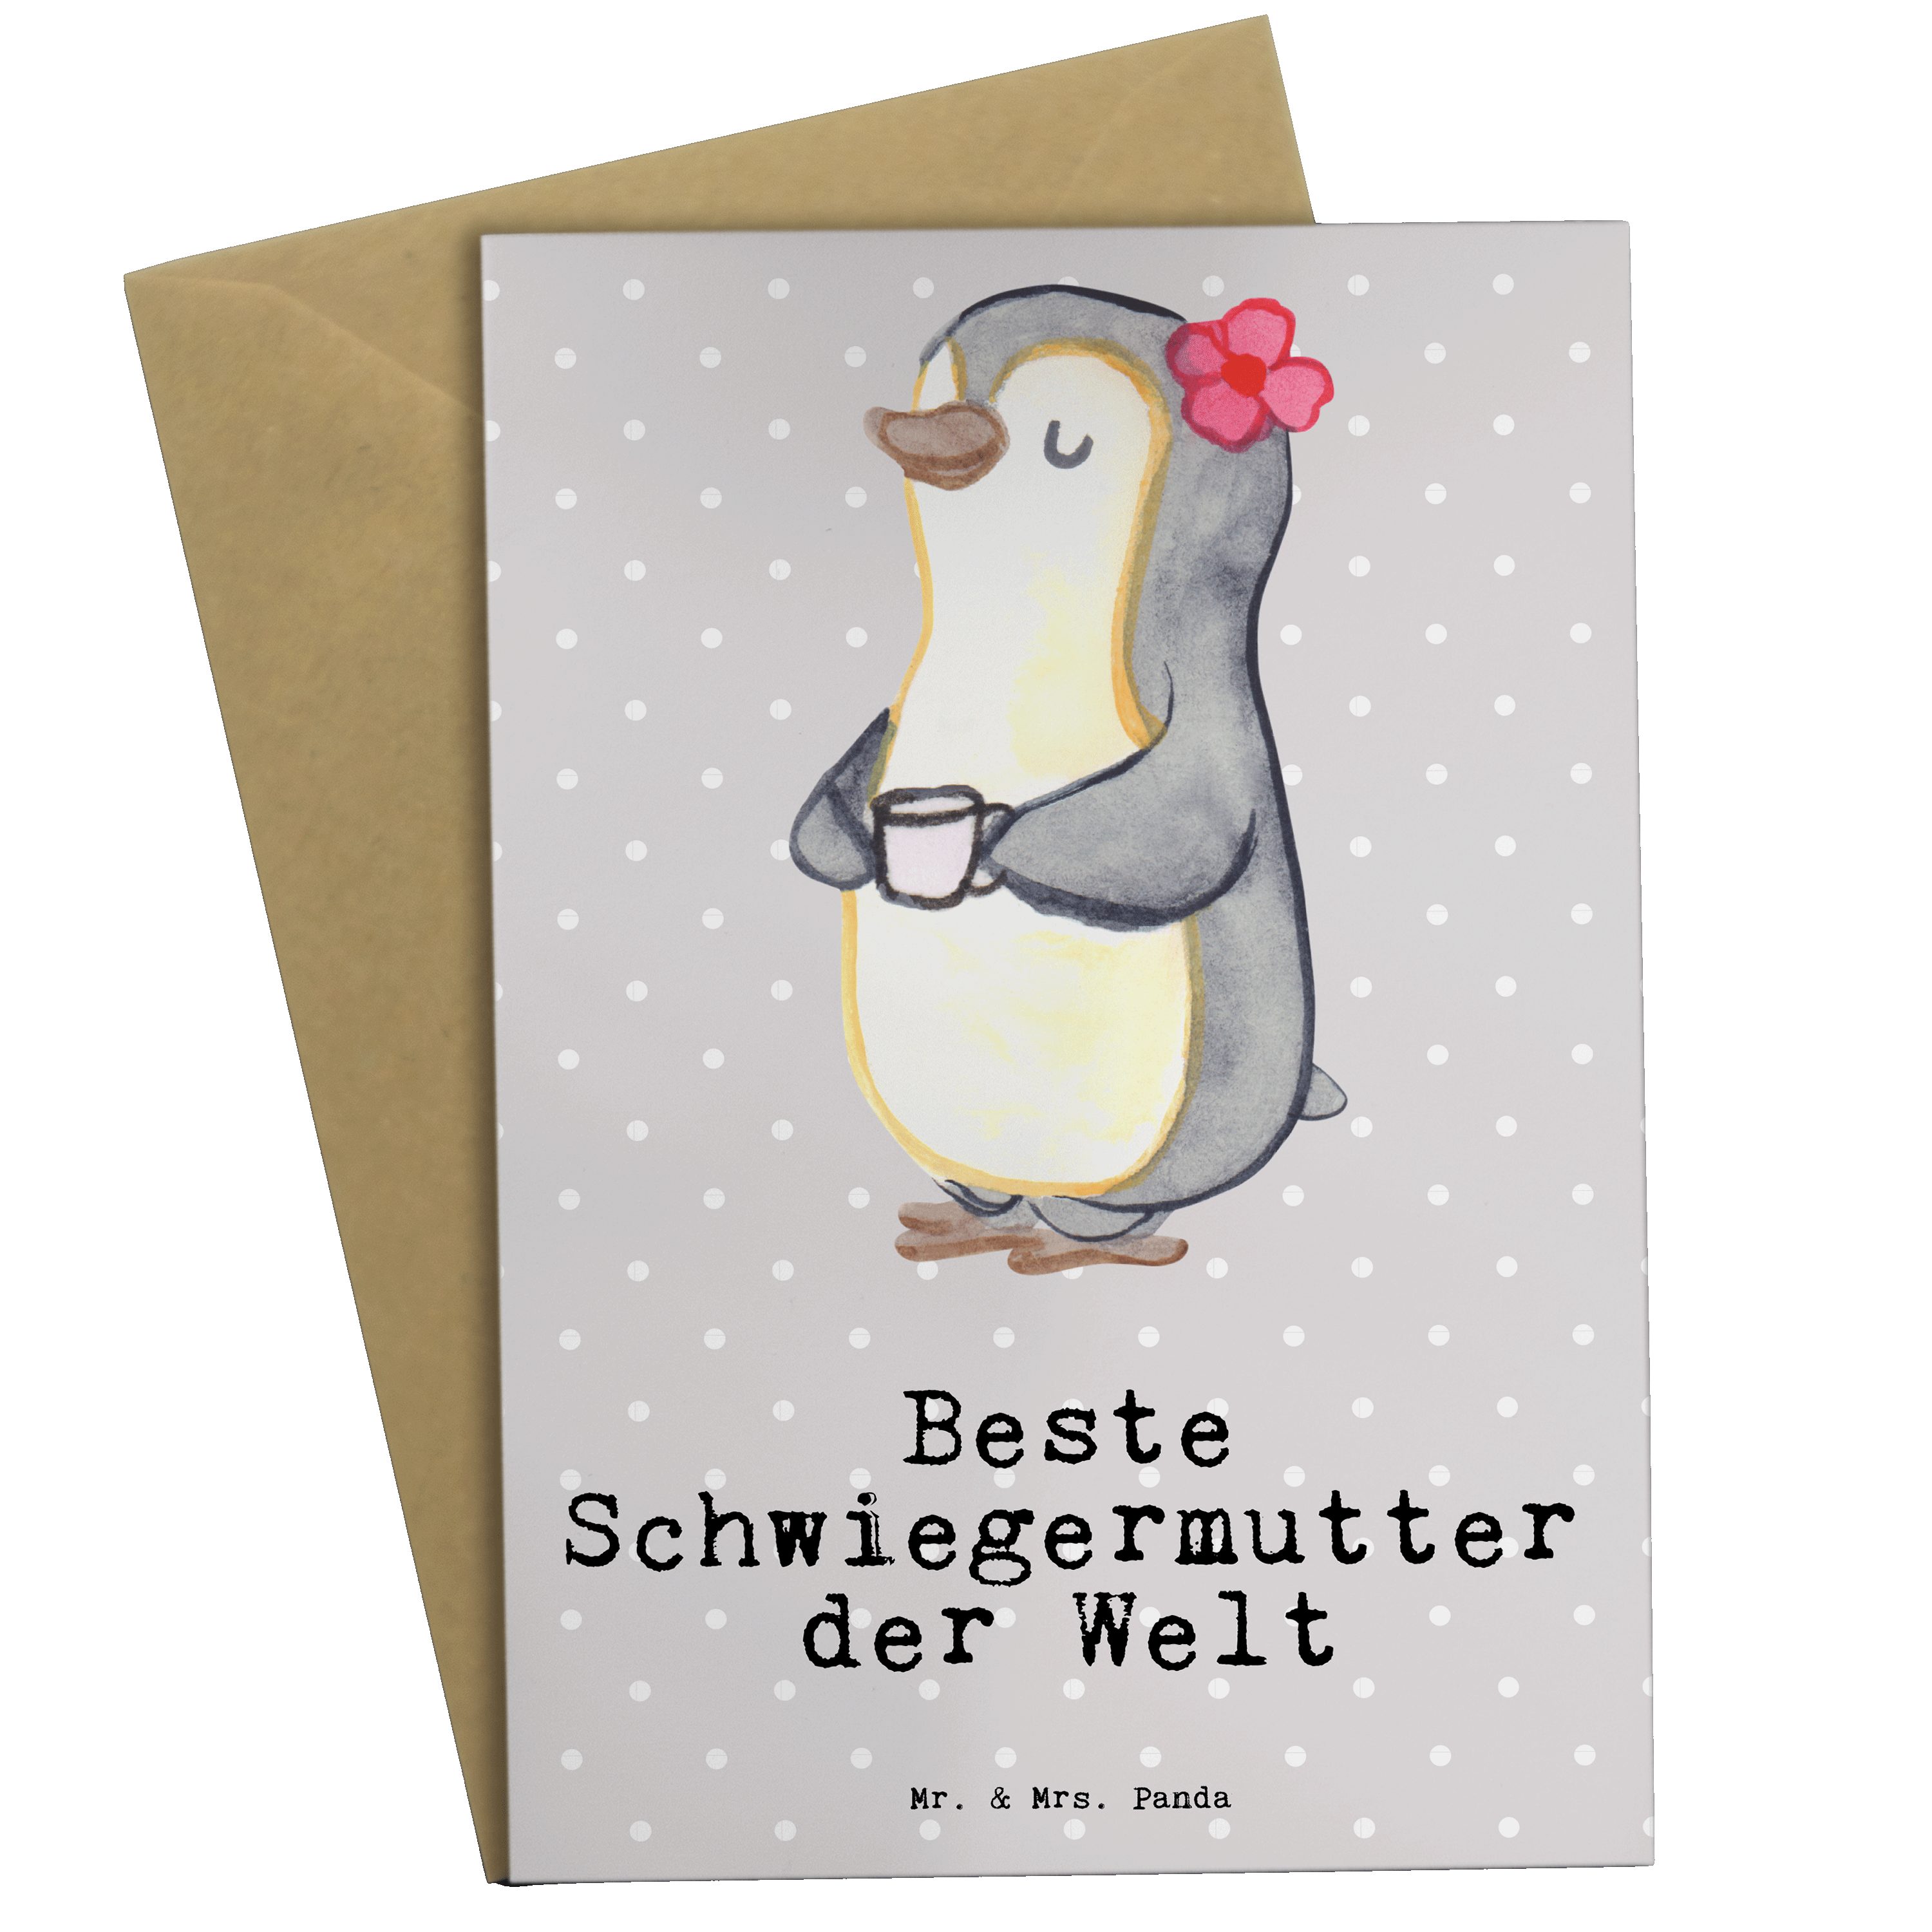 Mr. & Mrs. Panda Grußkarte Pinguin Beste Schwiegermutter der Welt - Grau Pastell - Geschenk, Kla